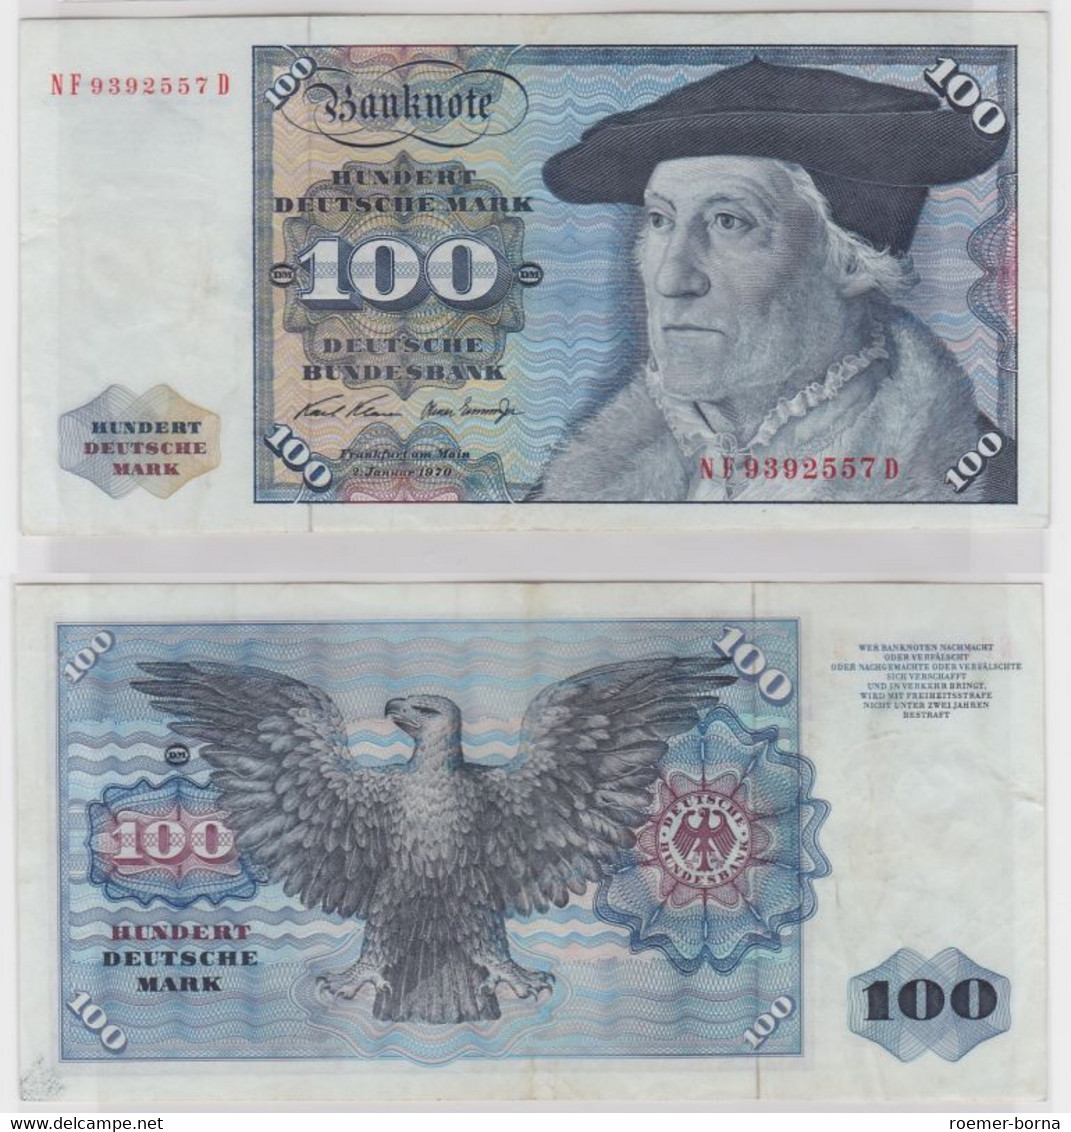 T146305 Banknote 100 DM Deutsche Mark Ro. 273b Schein 2.Jan 1970 KN NF 9392557 D - 100 Deutsche Mark